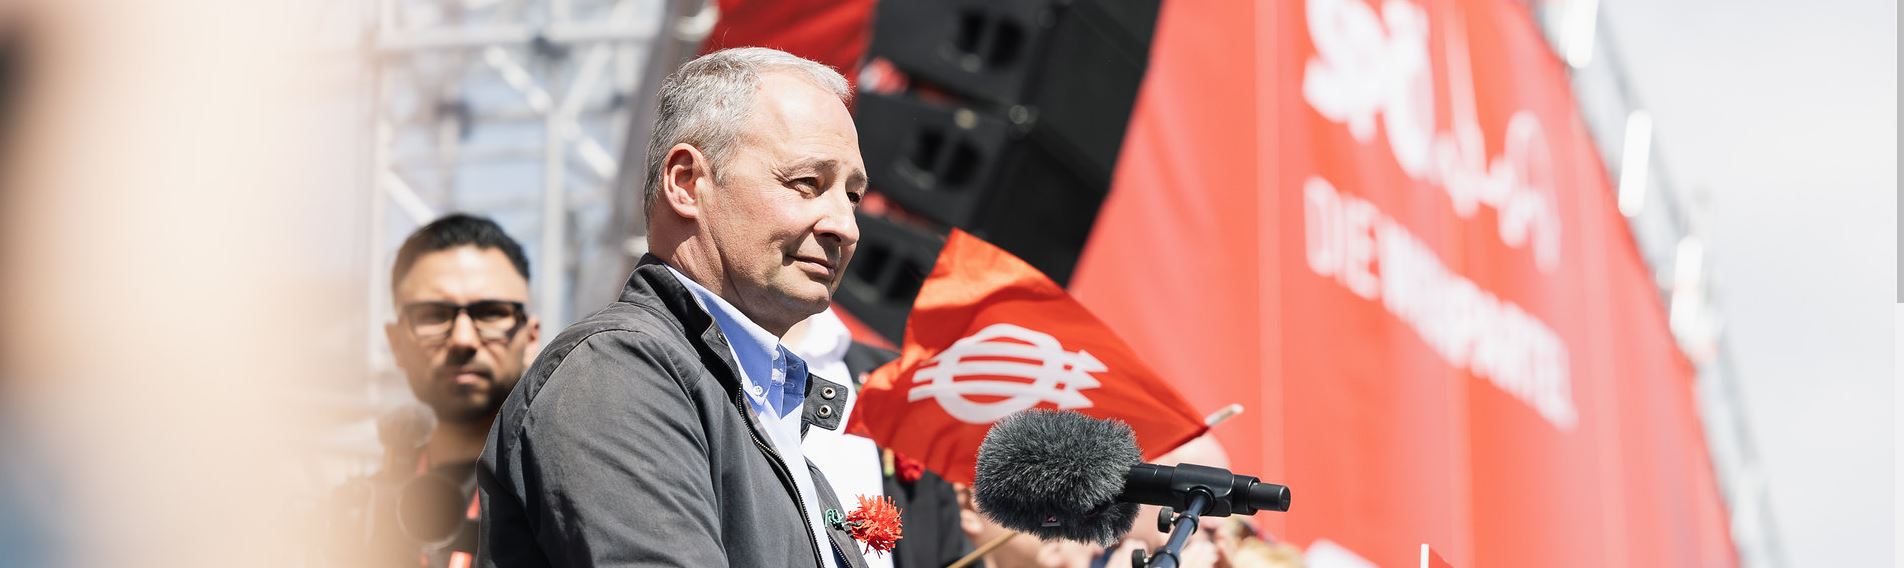 Am 9. Juni SPÖ wählen – für Klimaschutz, Steuergerechtigkeit & die Stärkung sozialer Rechte